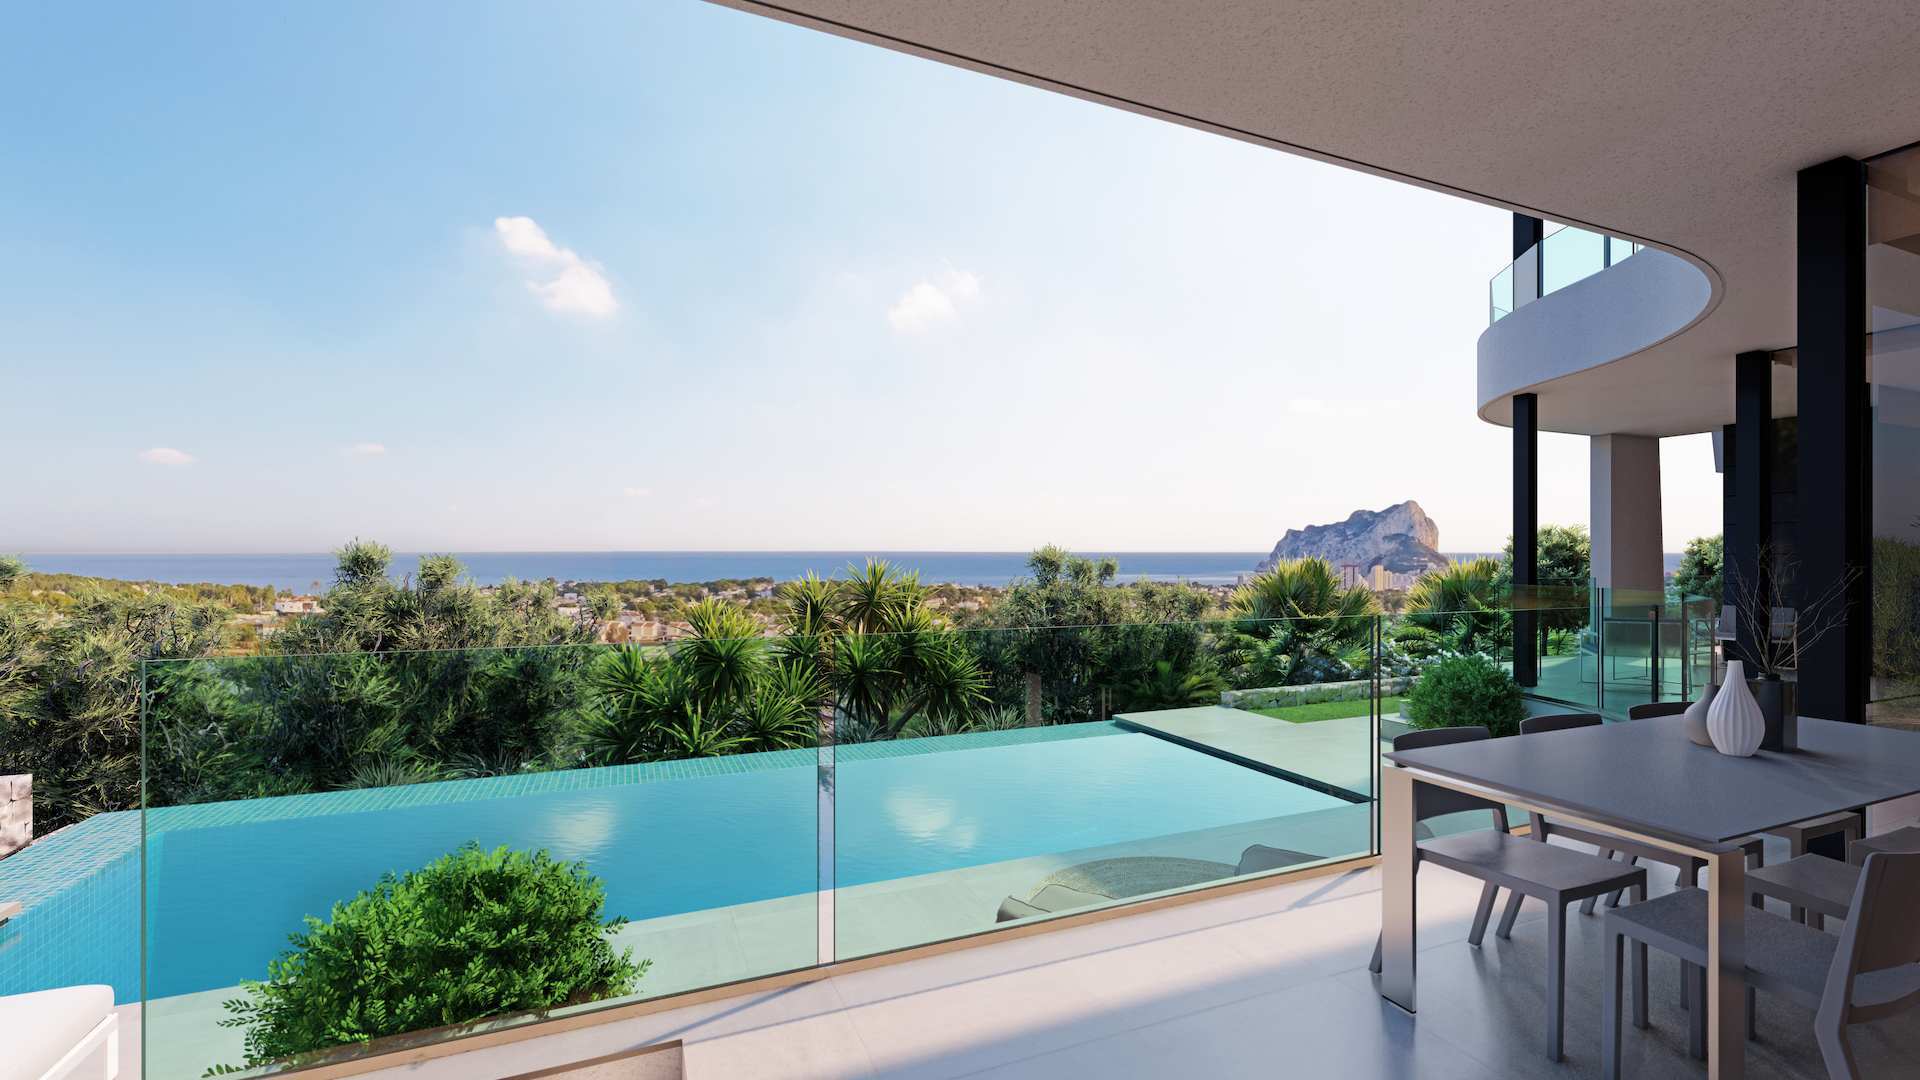 Increíble casa nueva y moderna con piscina infinita y vistas al mar